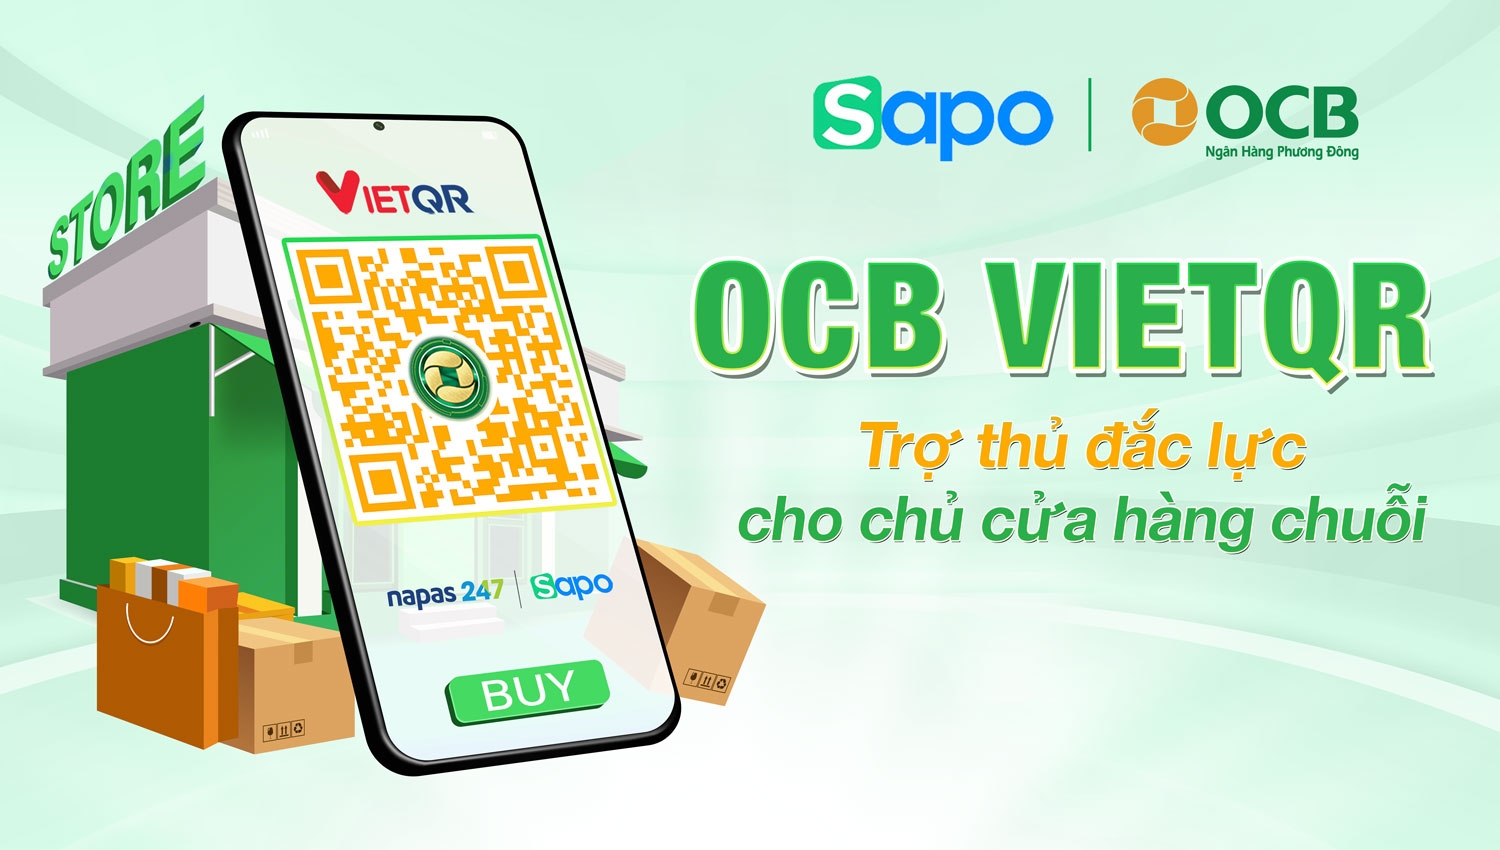 OCB VietQR - Giải pháp quản lý chuỗi cửa hàng cho chủ kinh doanh